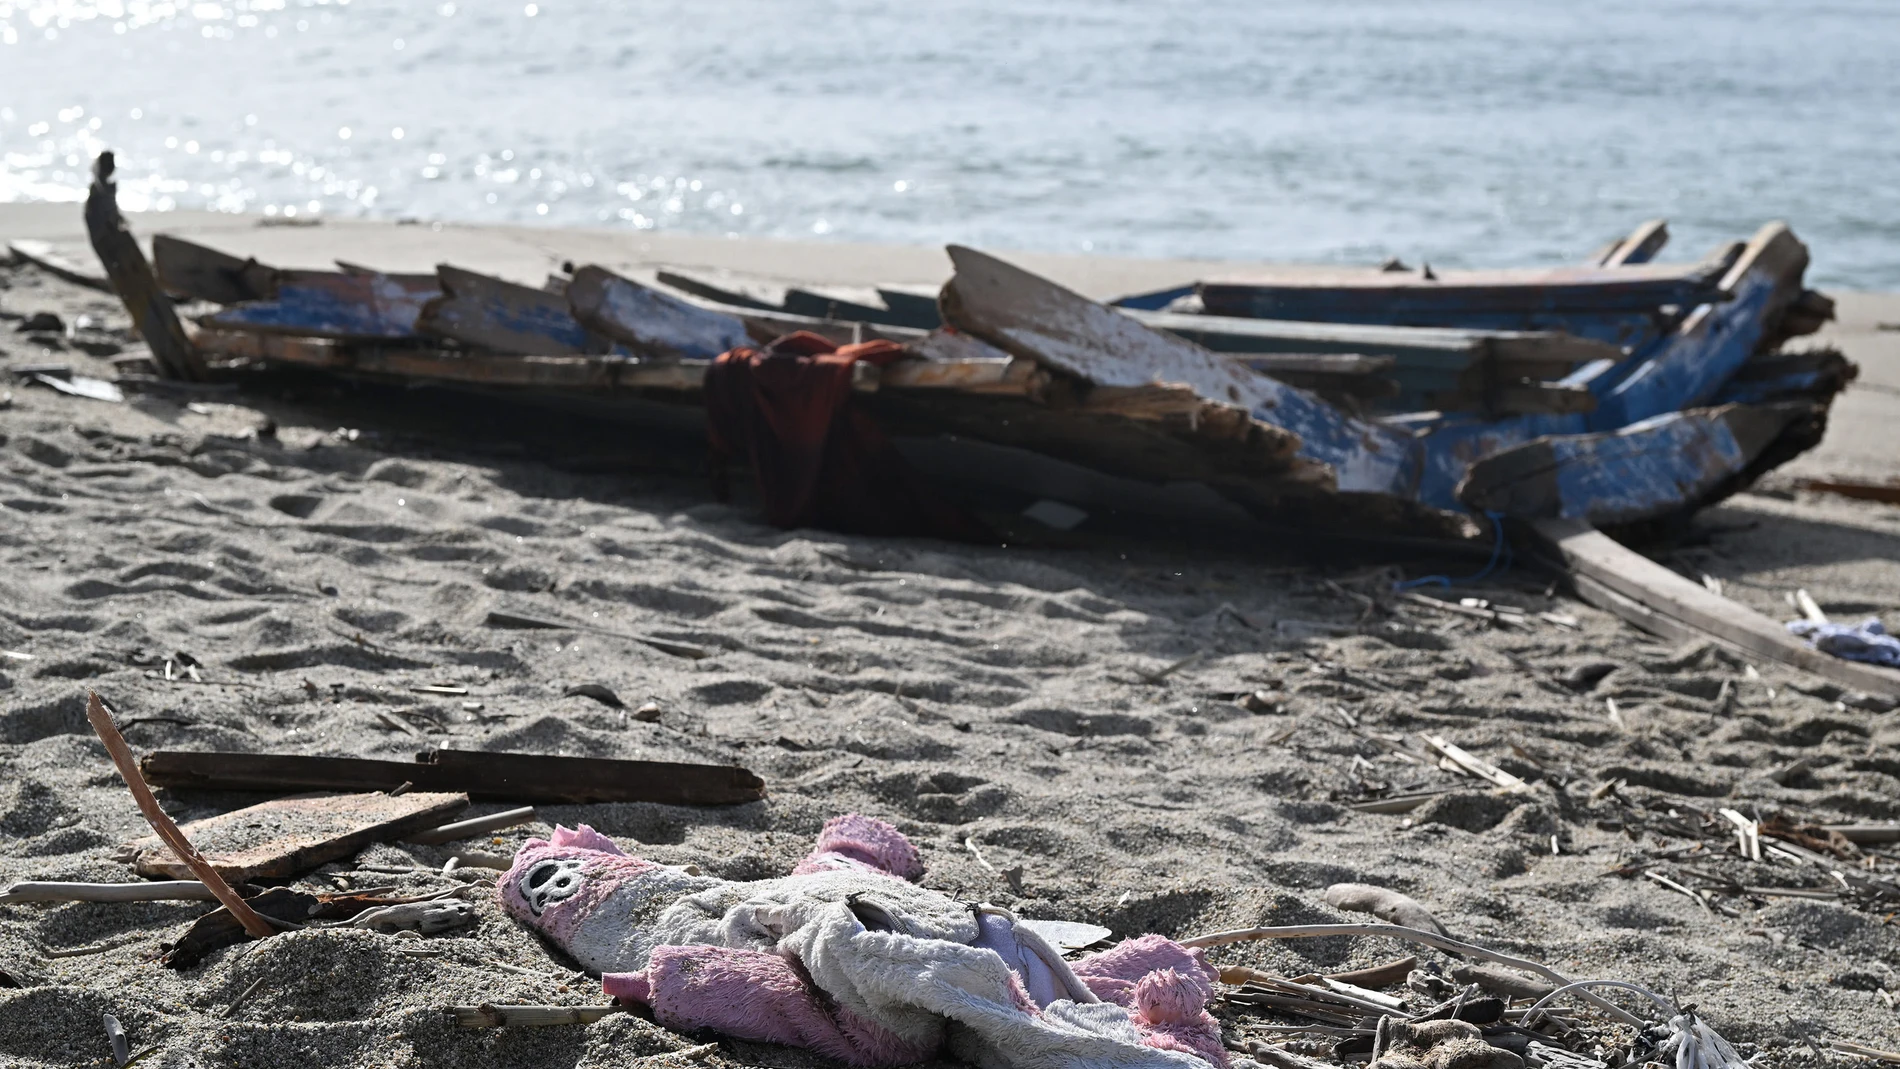 Trozos de madera y otros escombros fueron arrastrados a la playa, tres días después de que una embarcación de migrantes se hundiera frente a la costa, en Steccato di Cutro, al sur Italia, este 1 de marzo.